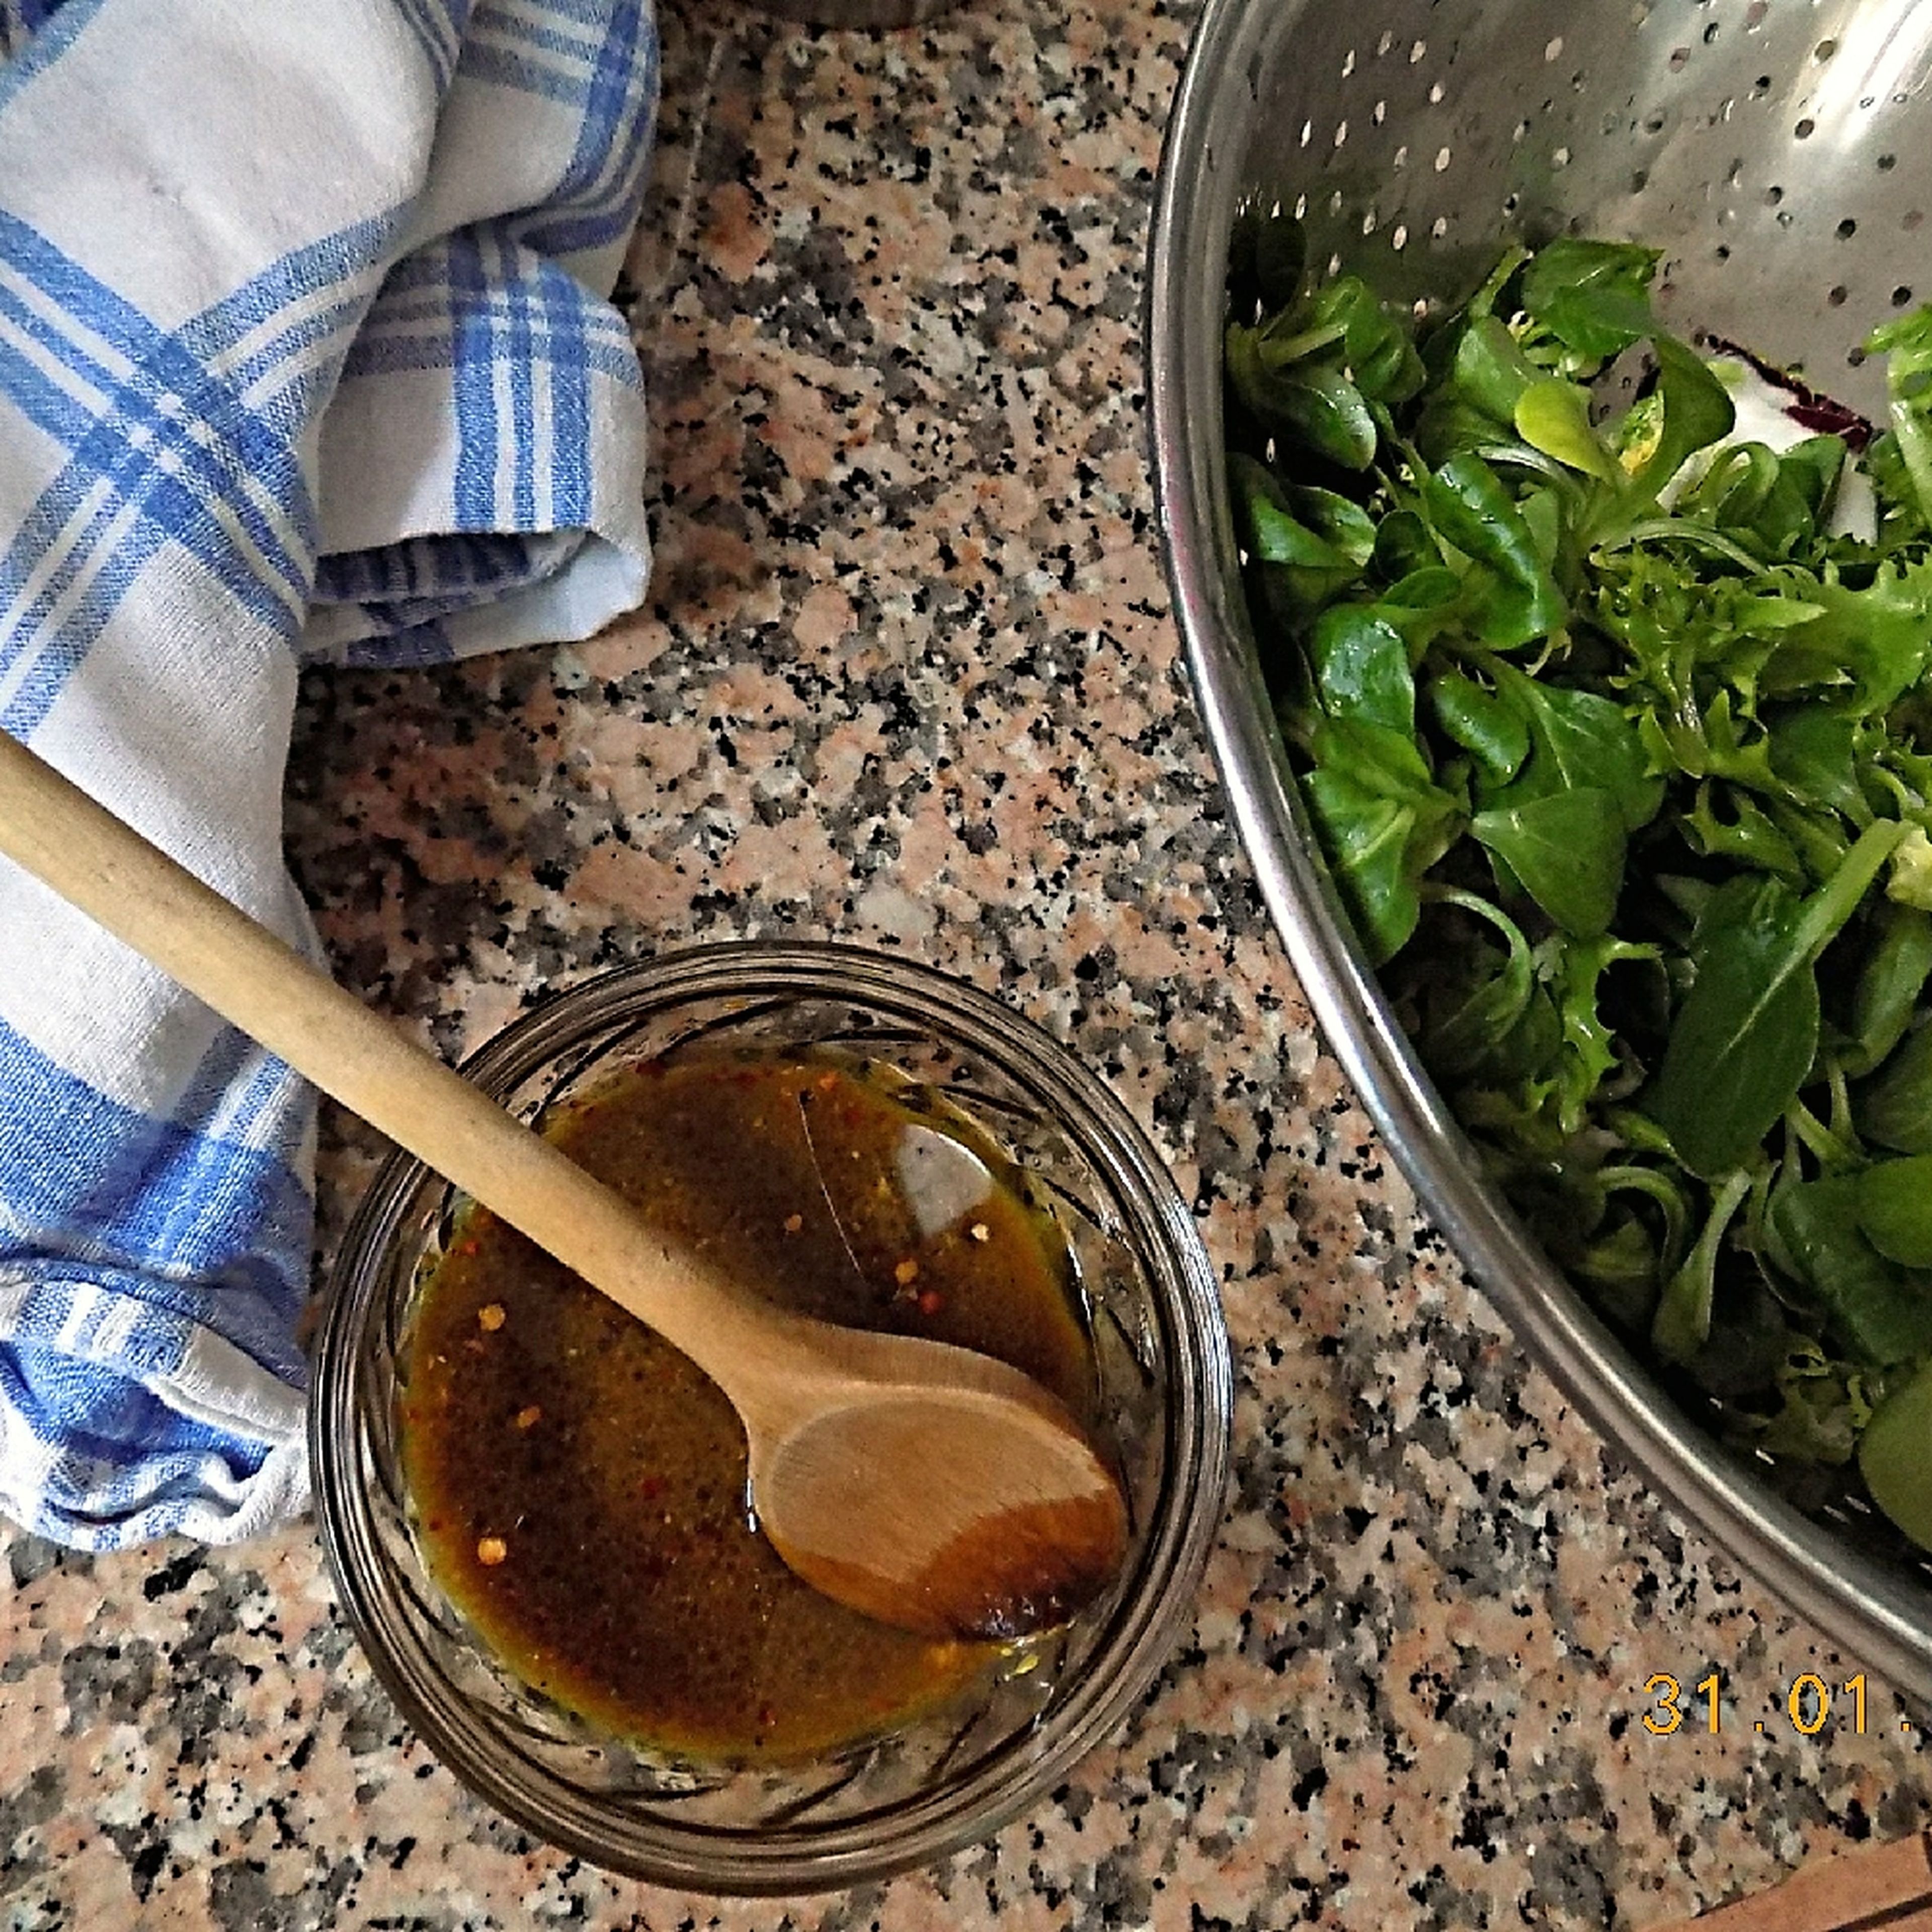 Den Salat waschen und abtropfen lassen. Olivenöl mit dem Honig, Senf und Balsamicoessig verrühren und mit Wasser verdünnen. Mit Chiliflocken, Salz und Pfeffer abschmecken. Salat und Dressing noch nicht vermischen.